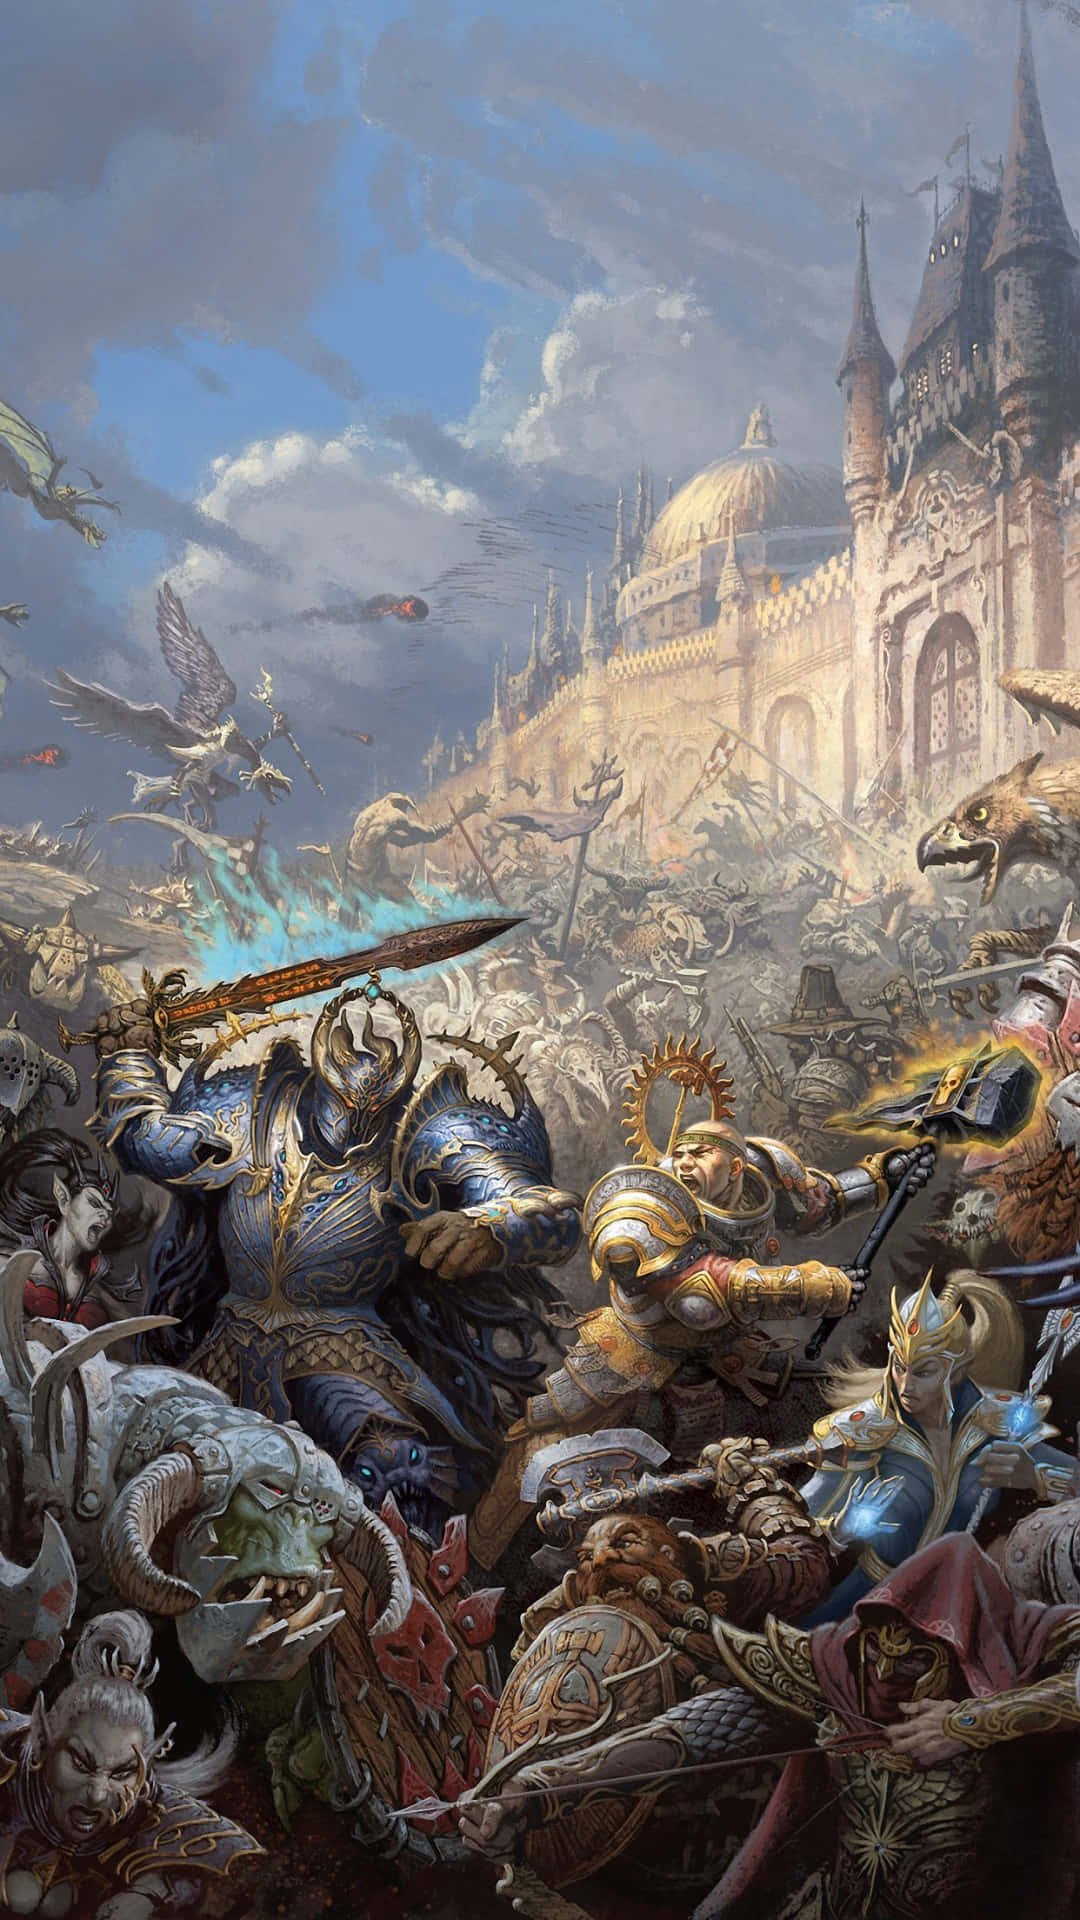 Entfesseledie Kraft Des Iphone X In Die Mythologische Welt Von Total War: Warhammer Ii!